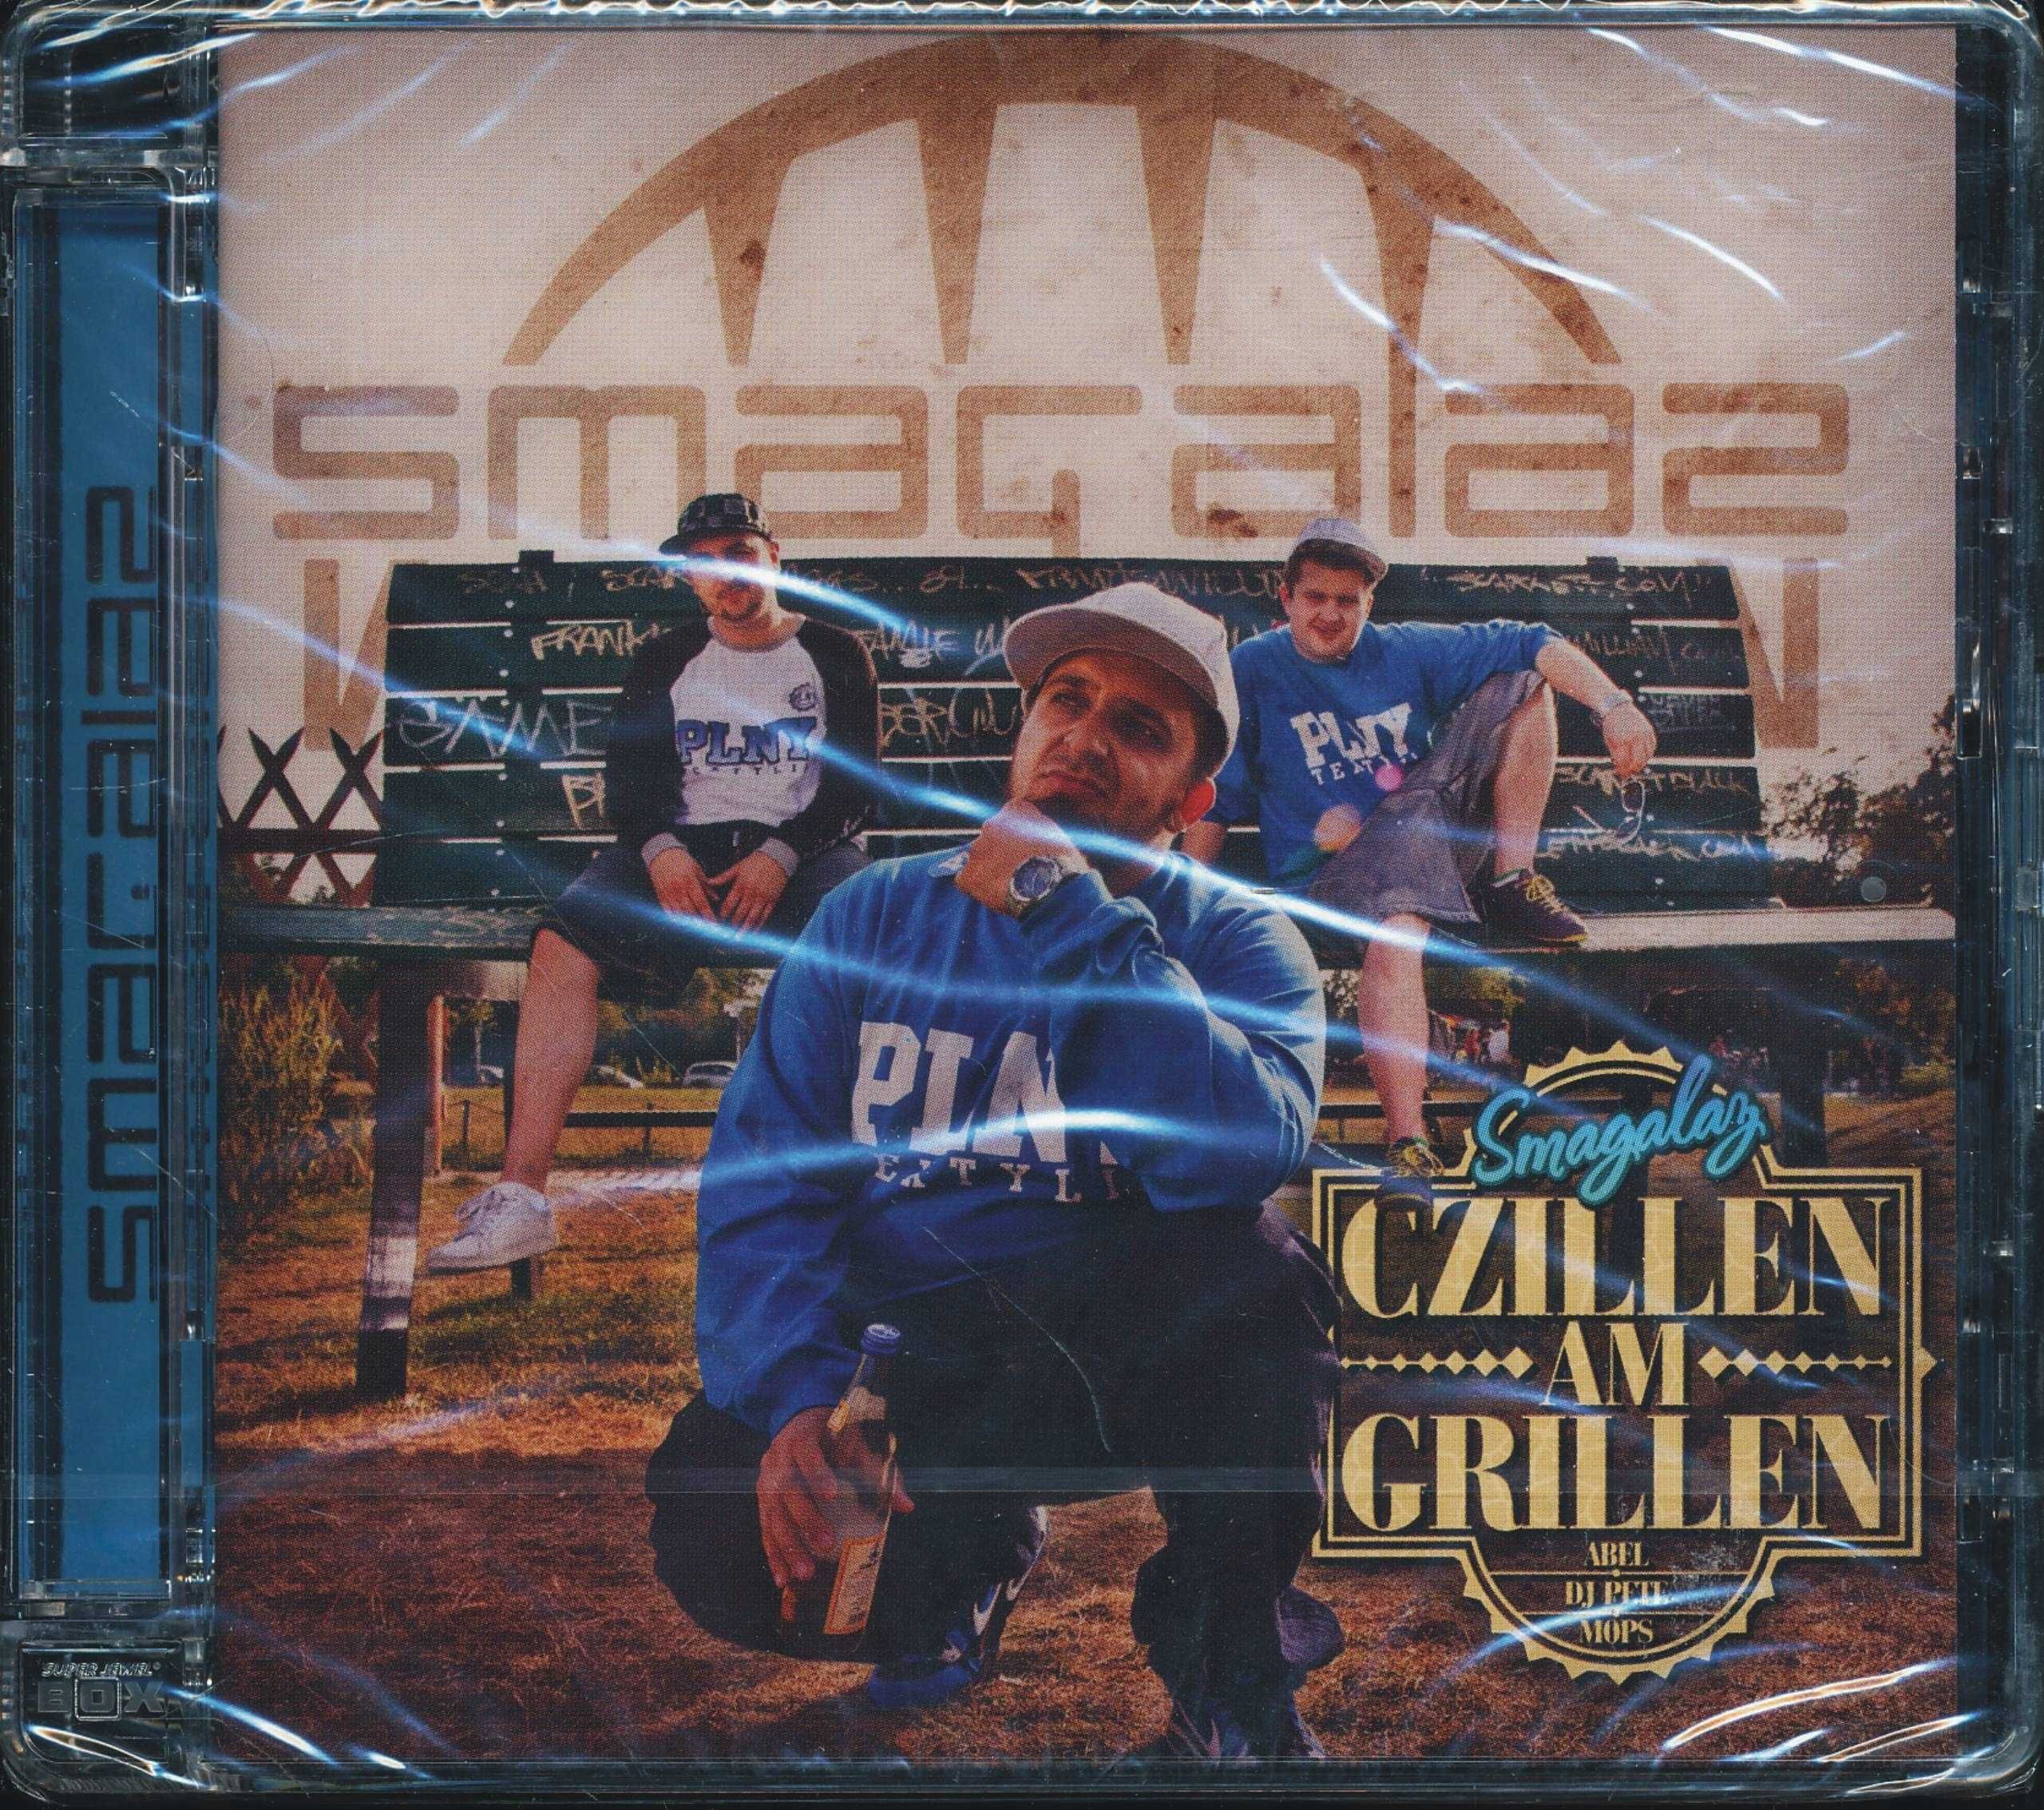 Smagalaz "Czillen Am Grillen" CD